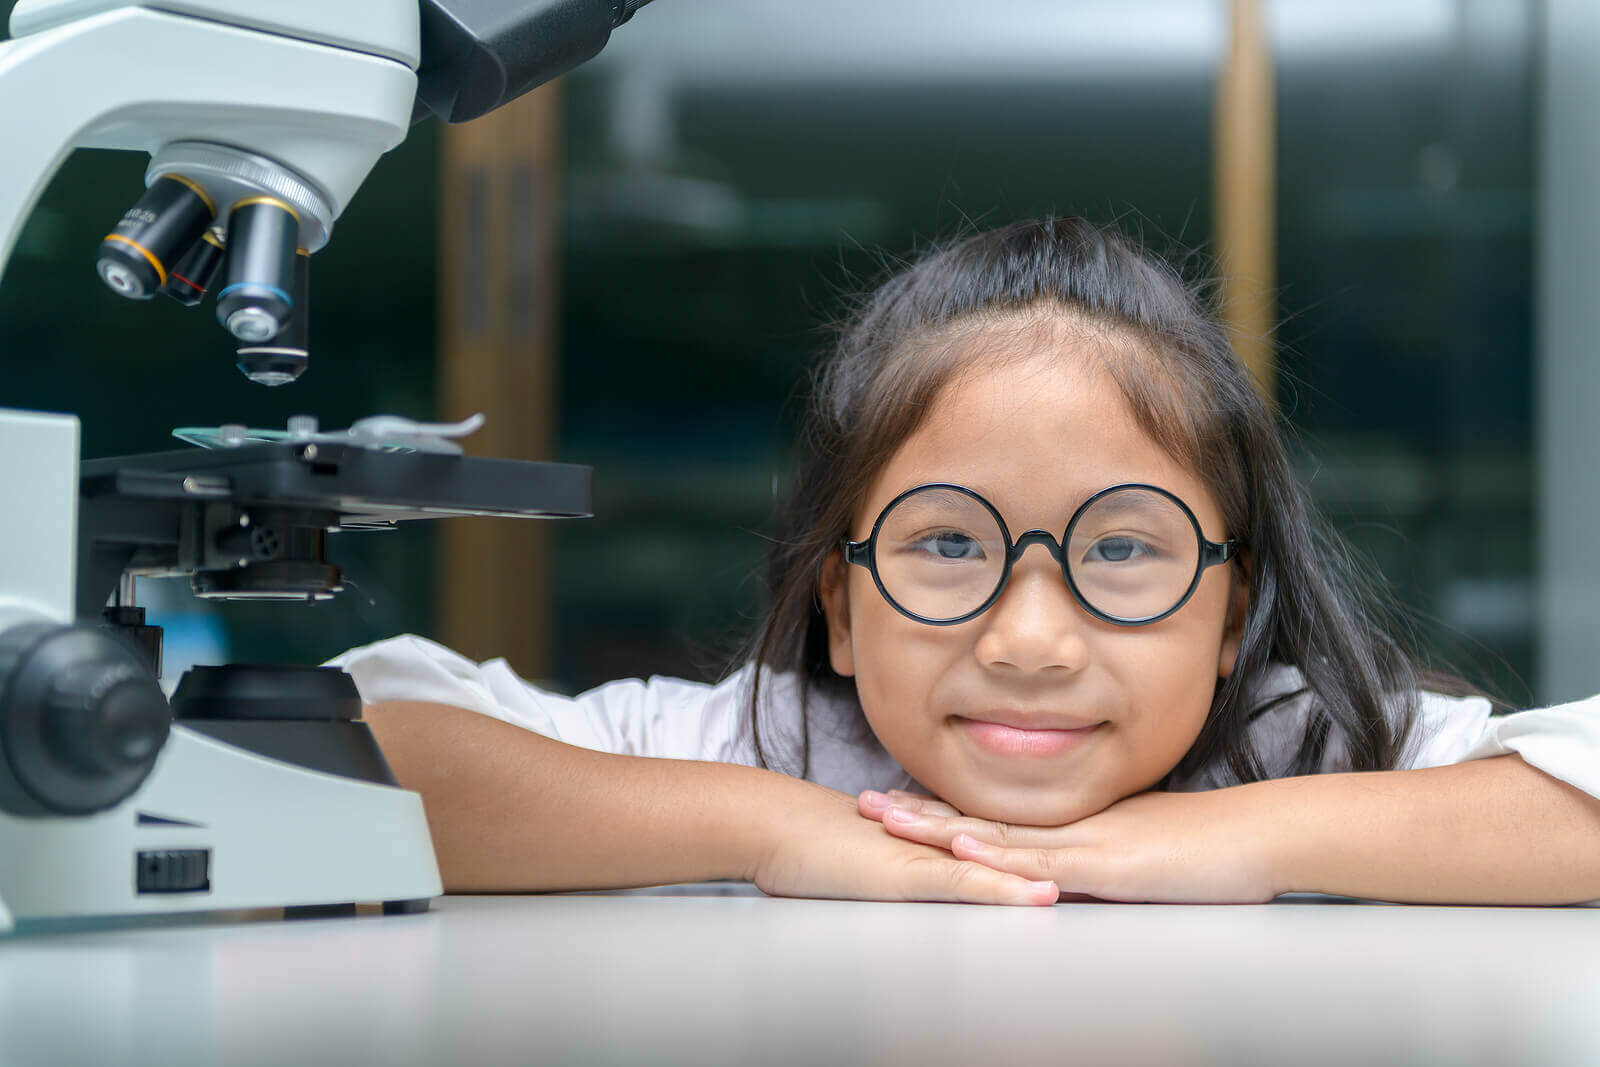 vetenskapligt tänkande hos barn: flicka vid mikroskop